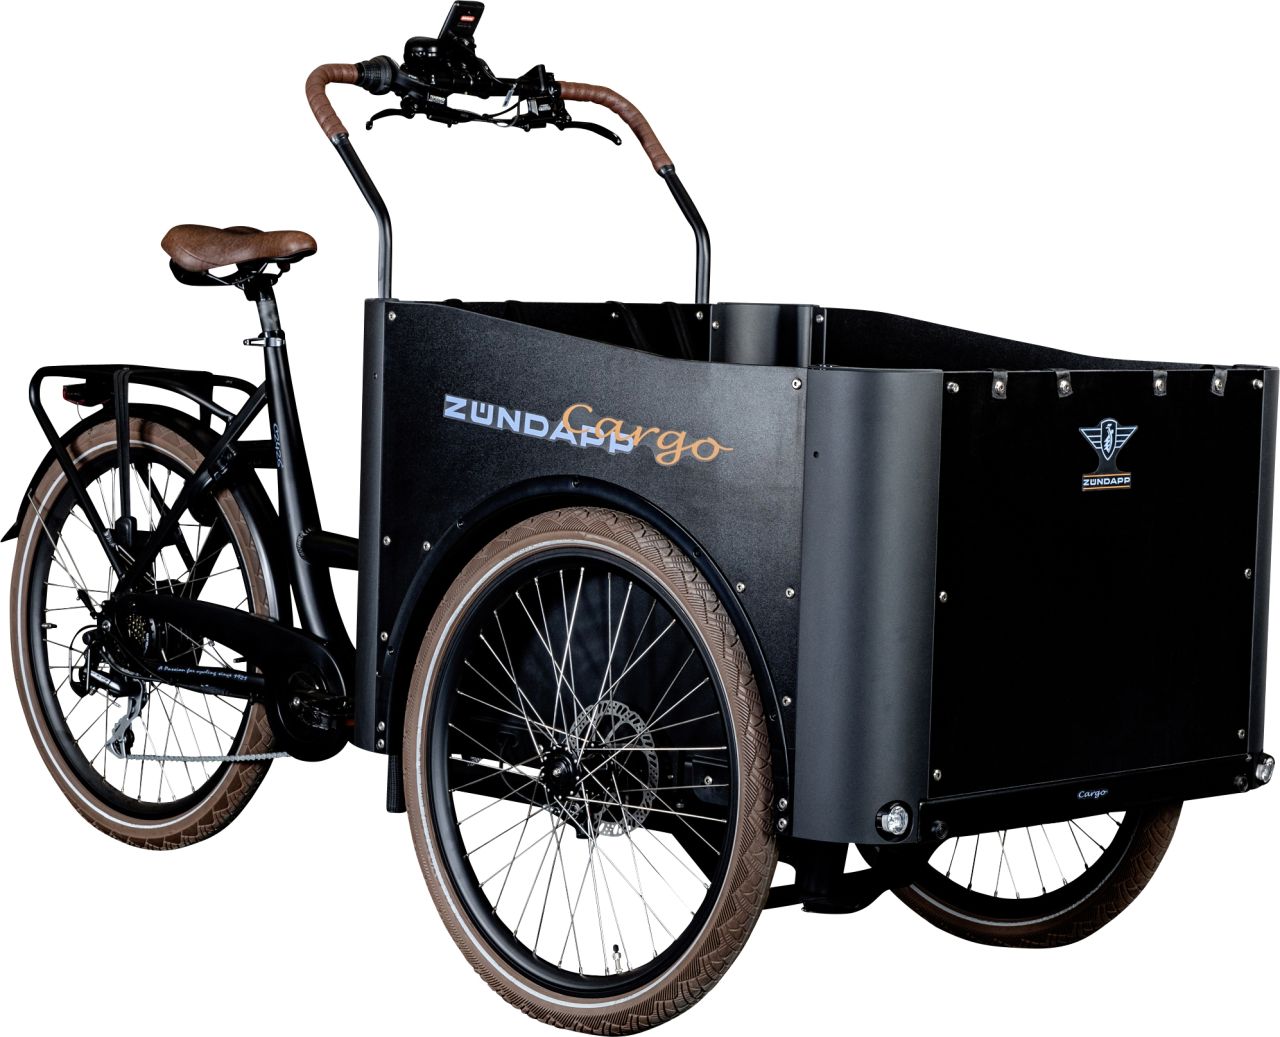 Zündapp E-Bike Lastenfahrrad Cargo C2426 26/24 Zoll mit Ladefläche 7-Gang RH 53cm 576 Wh schwarz bra